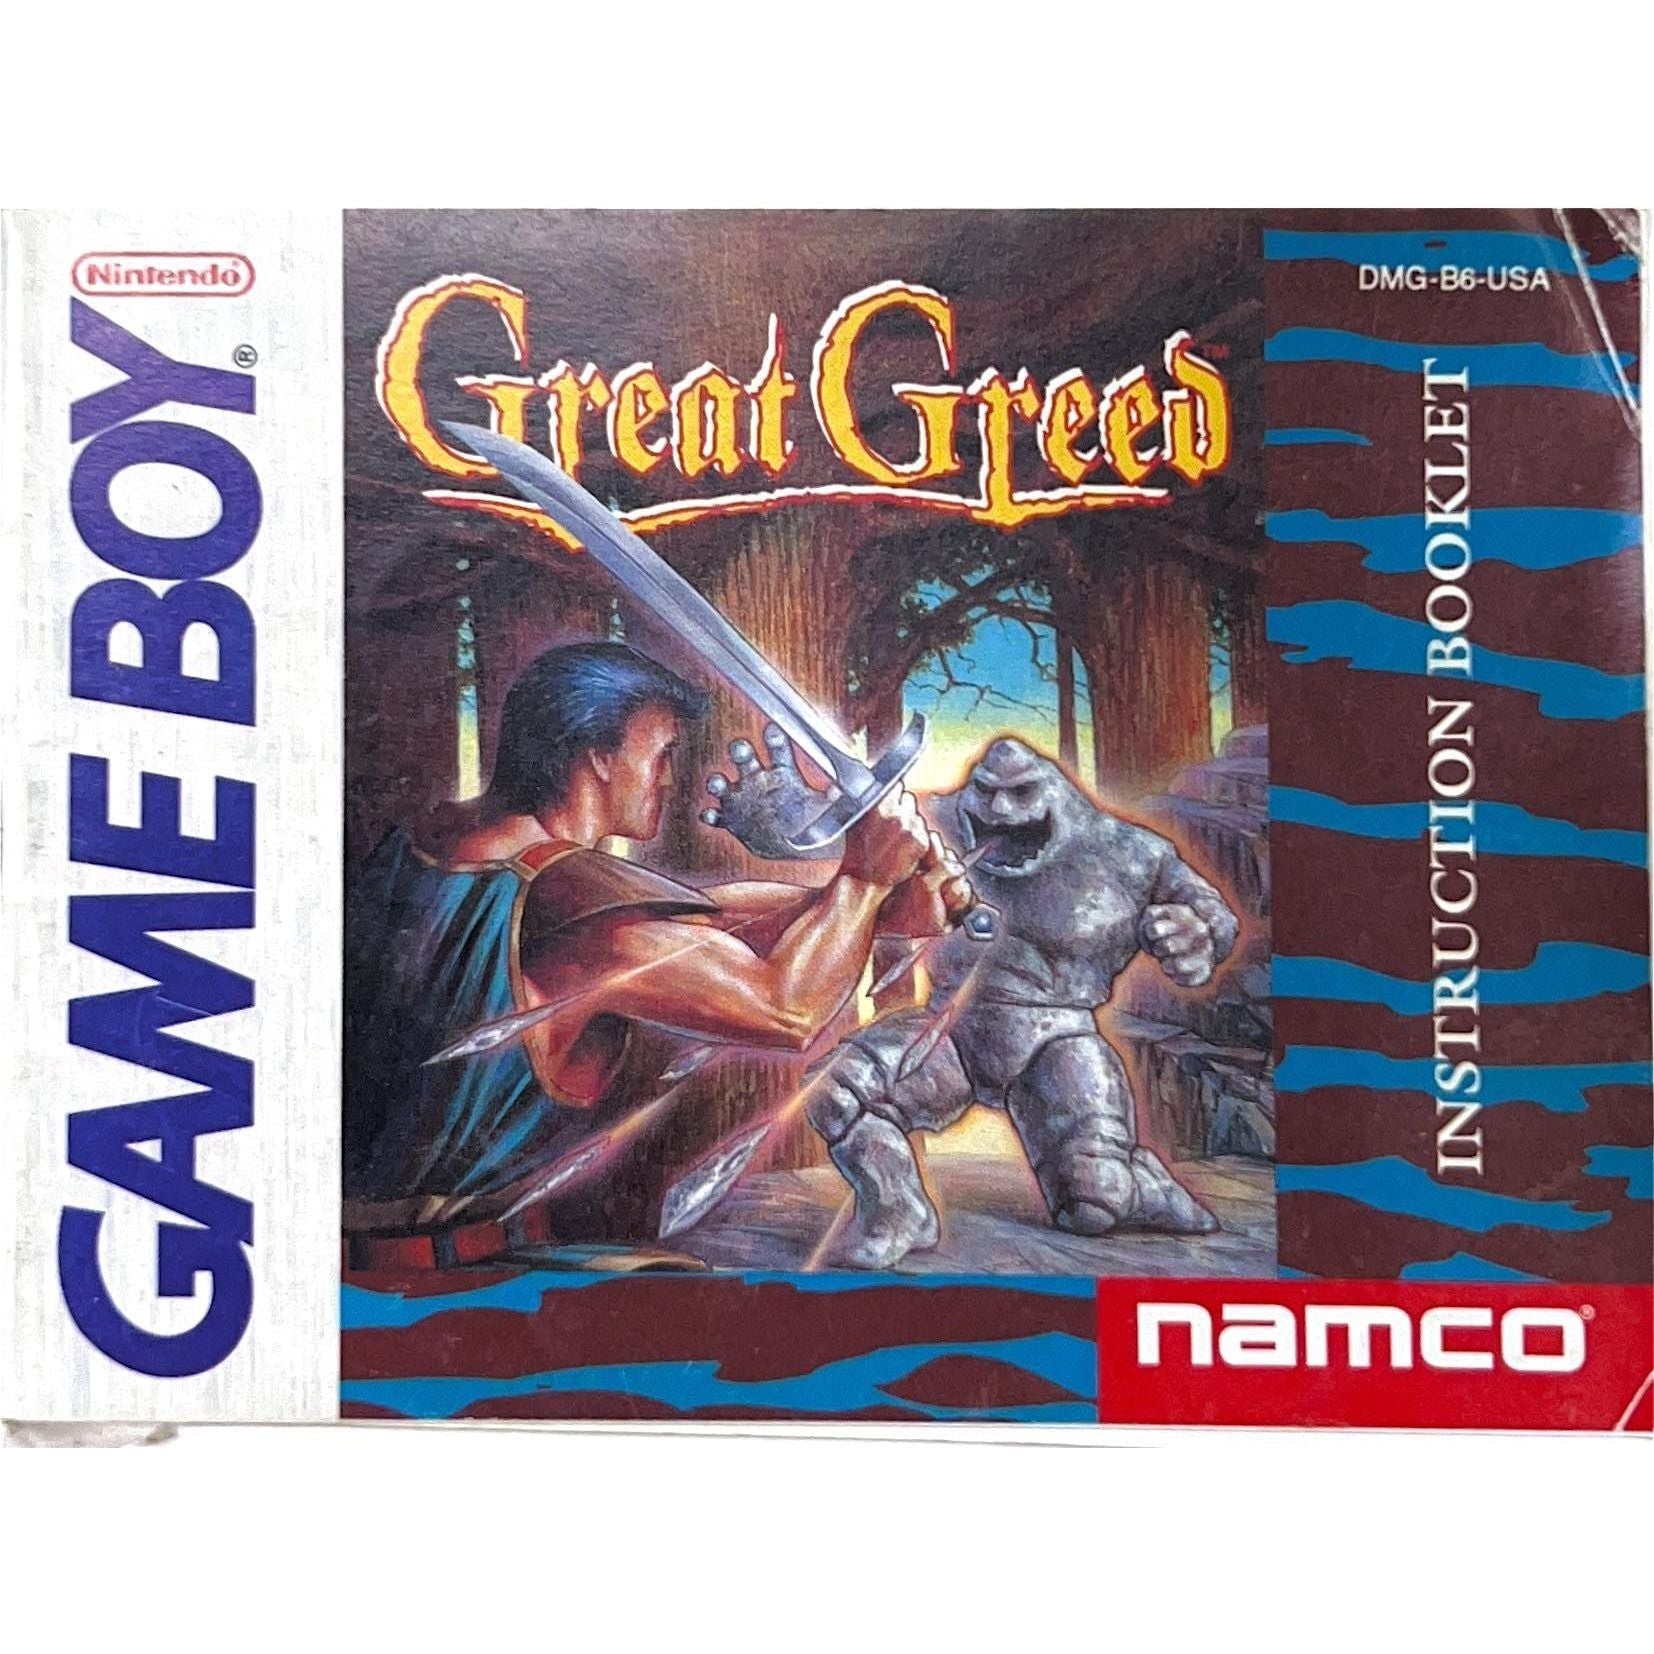 GB - Great Greed (Manual)